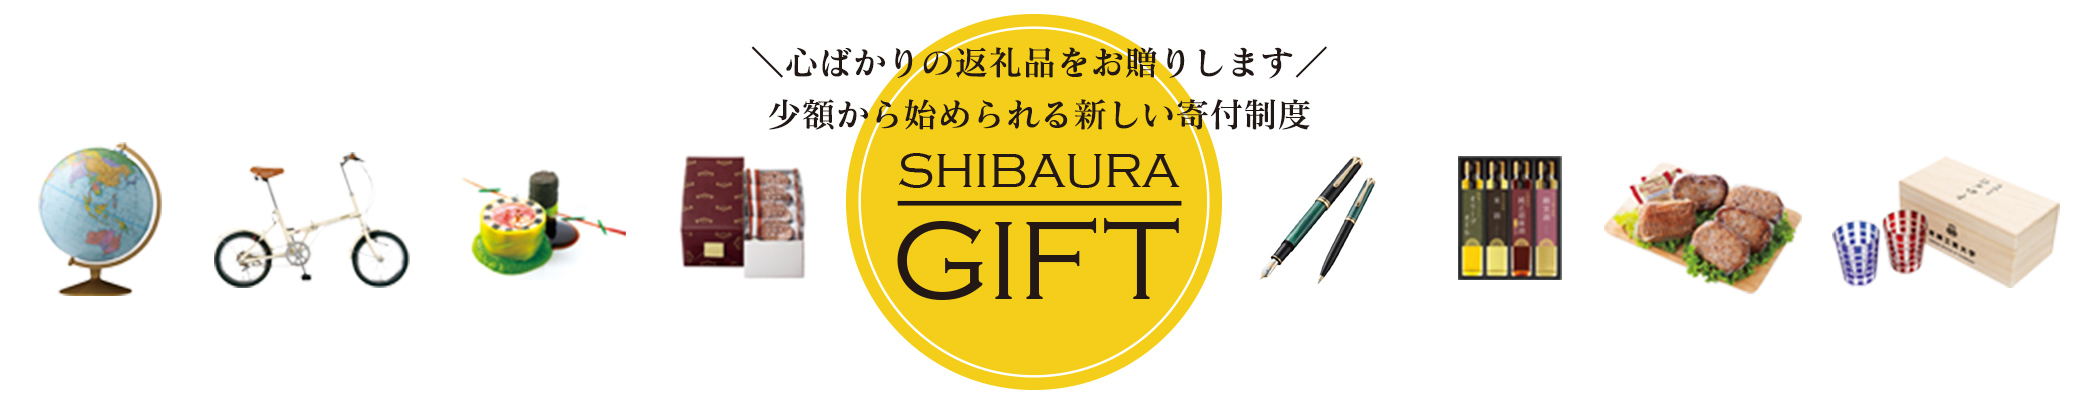 心ばかりの返礼品をお贈りします 少額から始められる新しい寄付制度 SHIBAURAGIFT